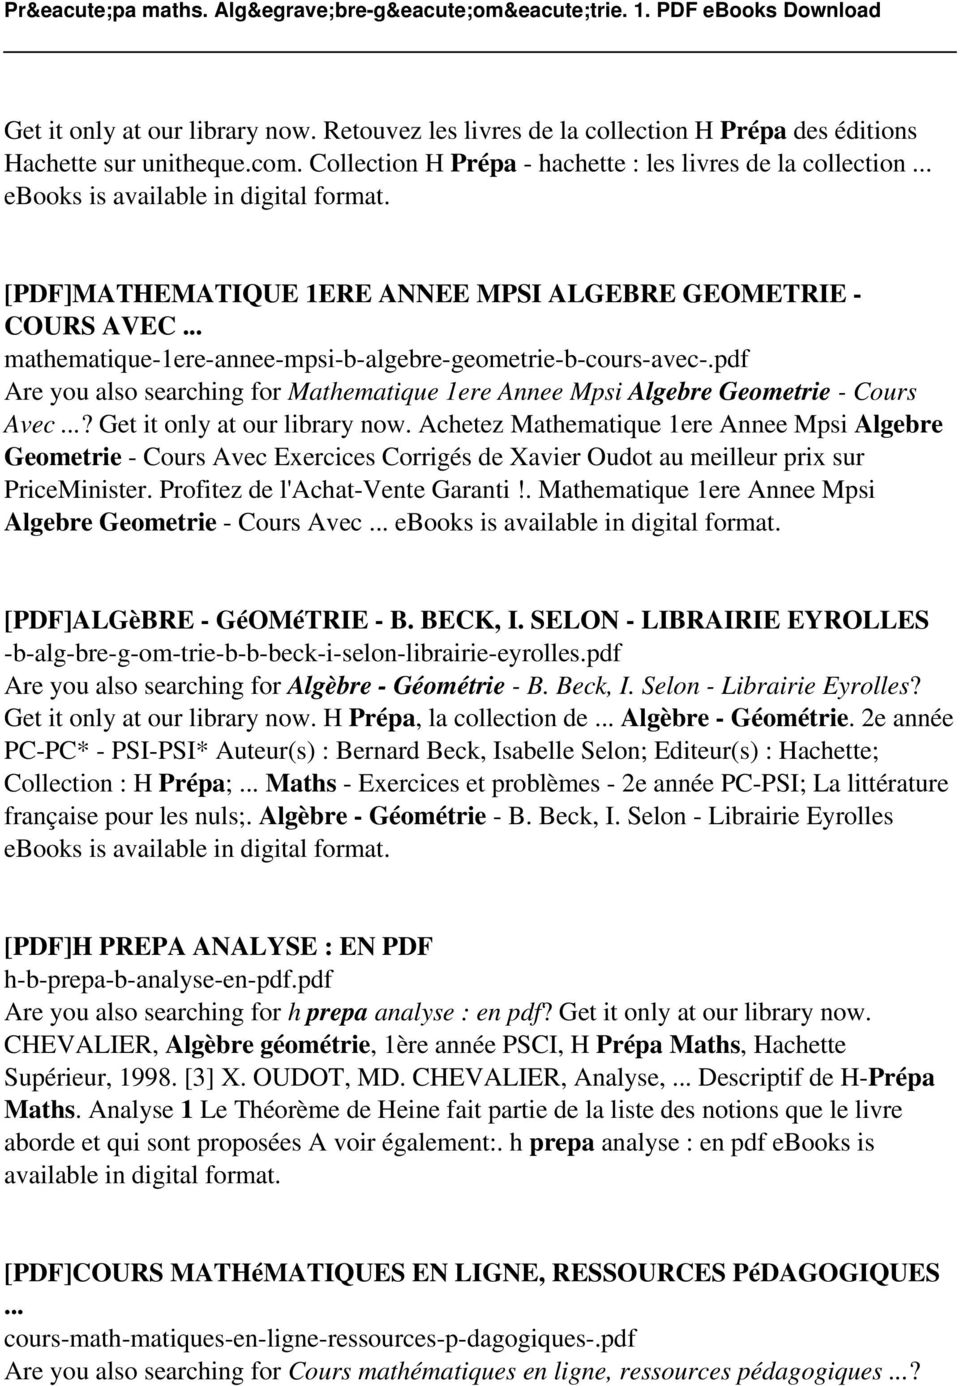 jintegre algebre pdf